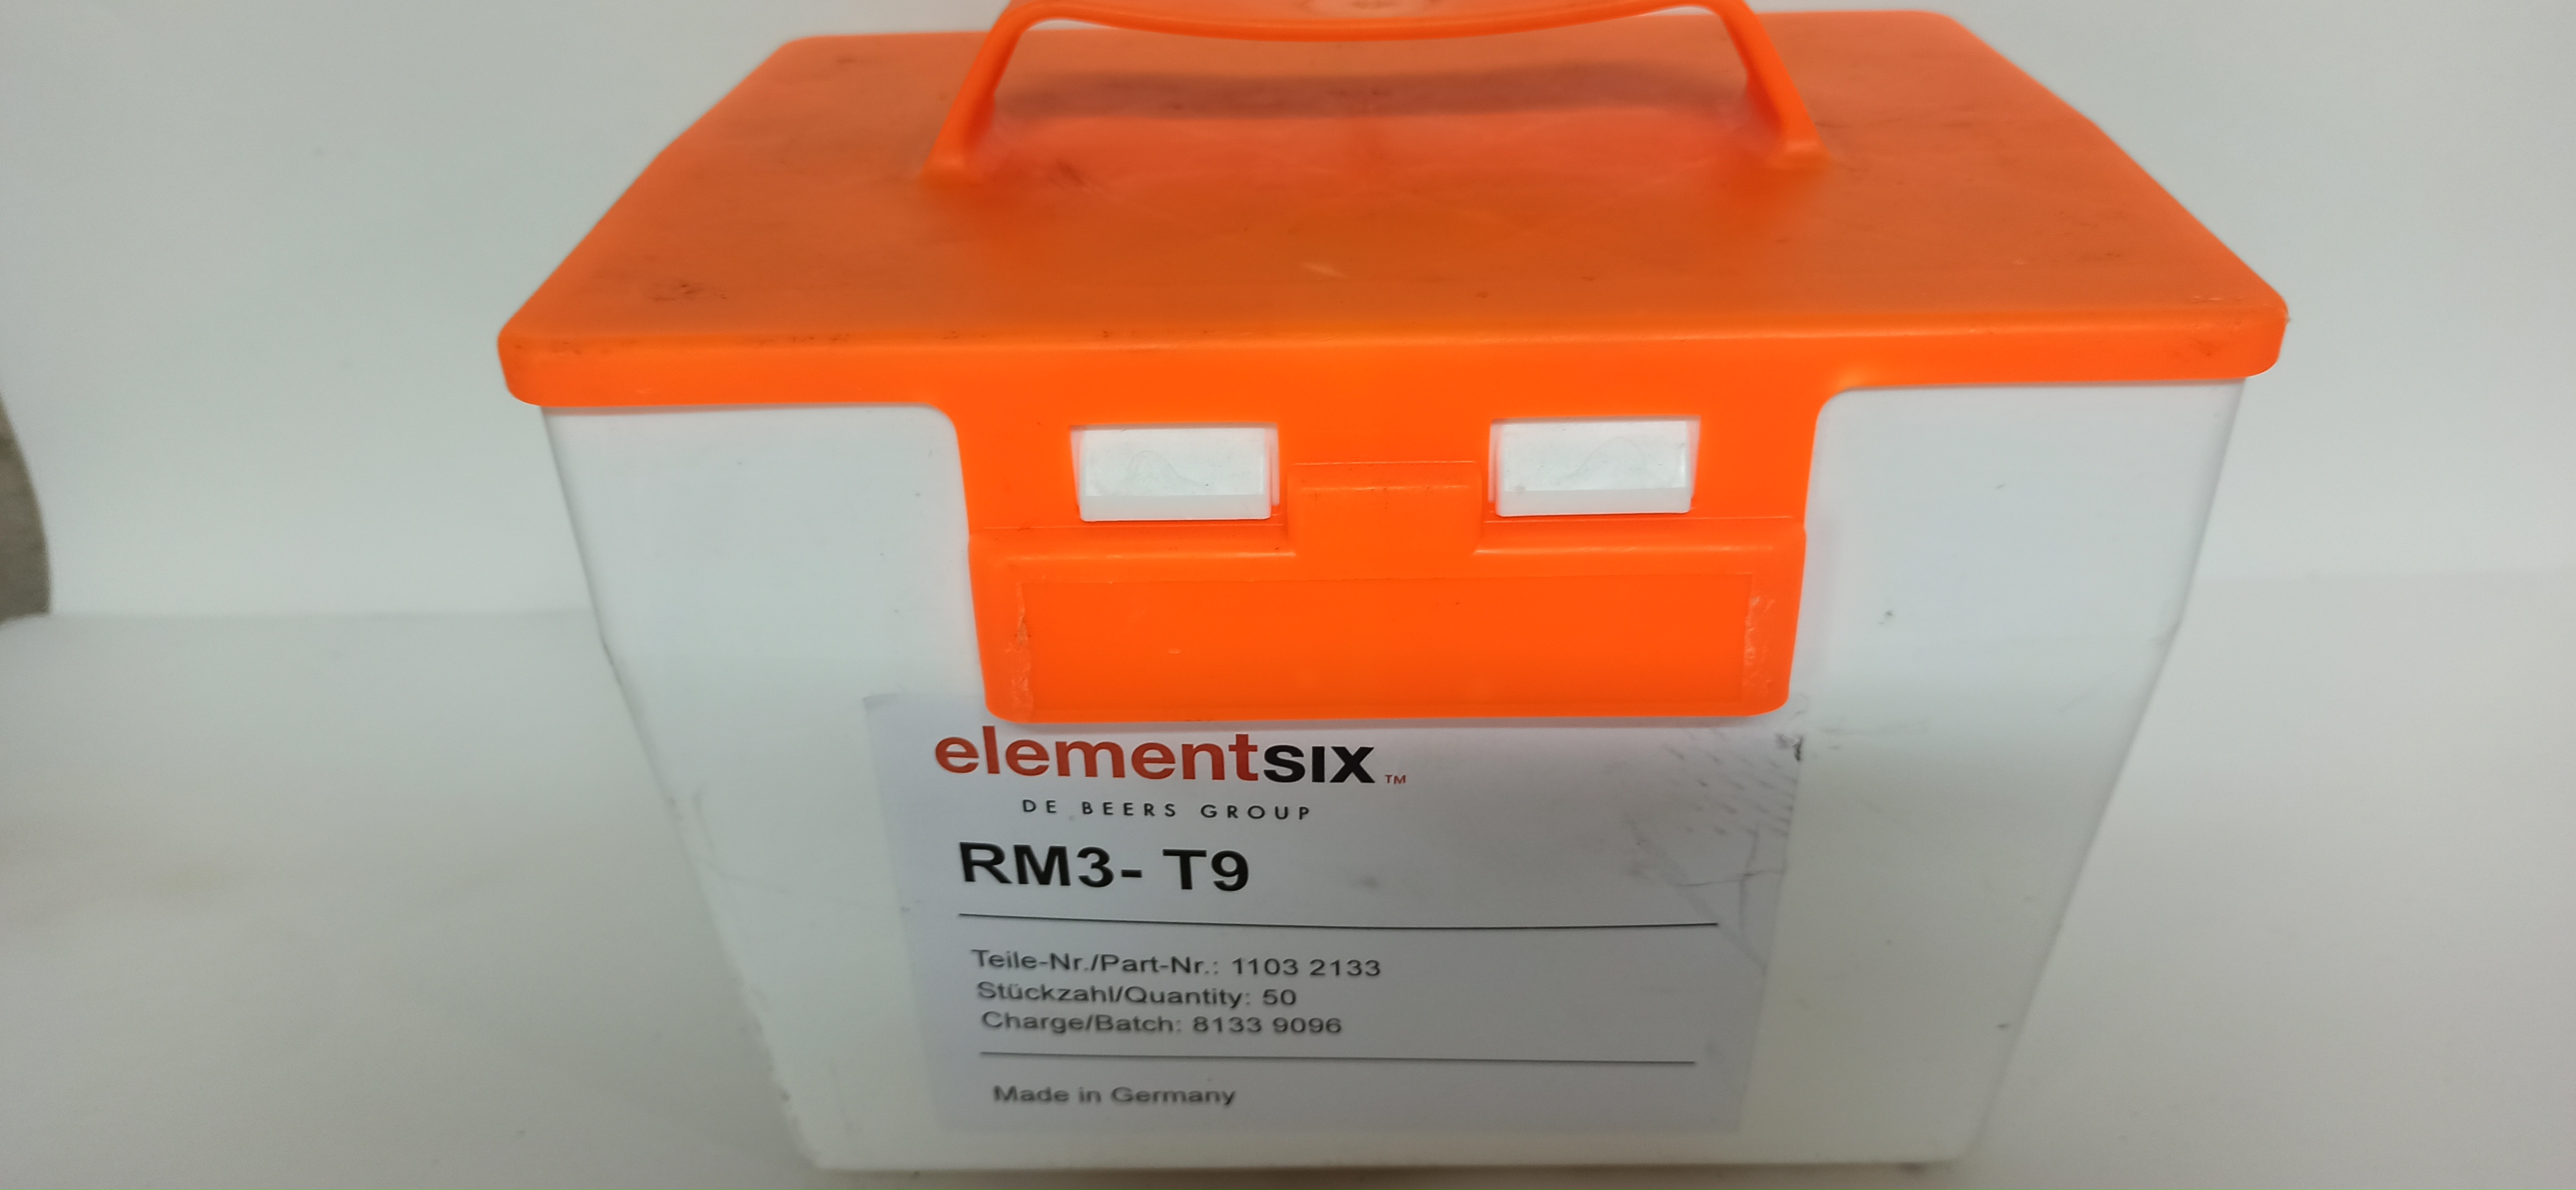 Резцы ElementSix - RM3-T9